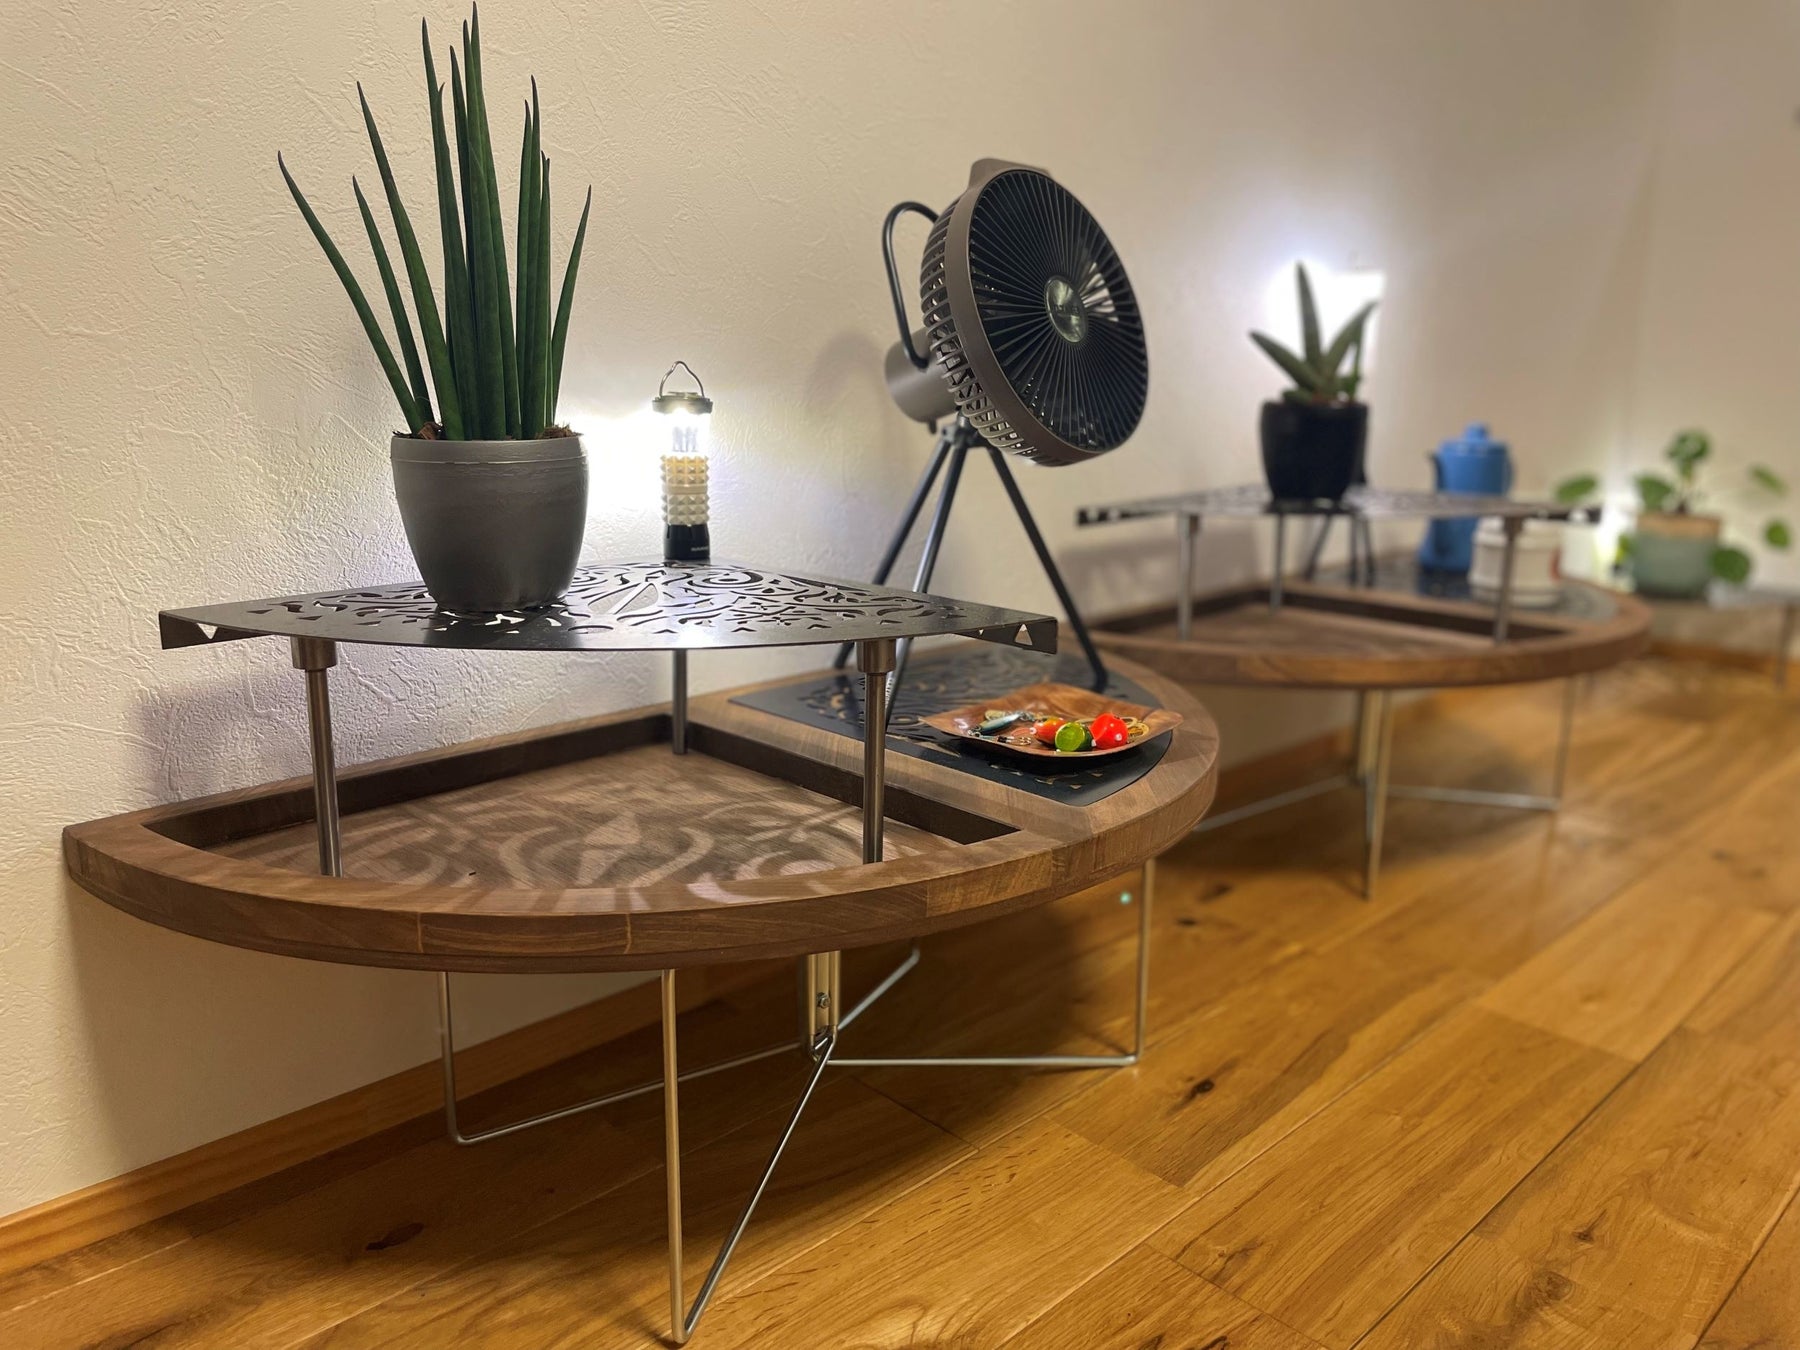 関西発アウトドア&ハウスギアブランド「xBx」が第一弾の新作を発表  10の特徴を持つ今までに無い全く新しい耐熱型ウッドテーブル『Xross Wood Table～クロス・ウッド・テーブル～』のサブ画像15